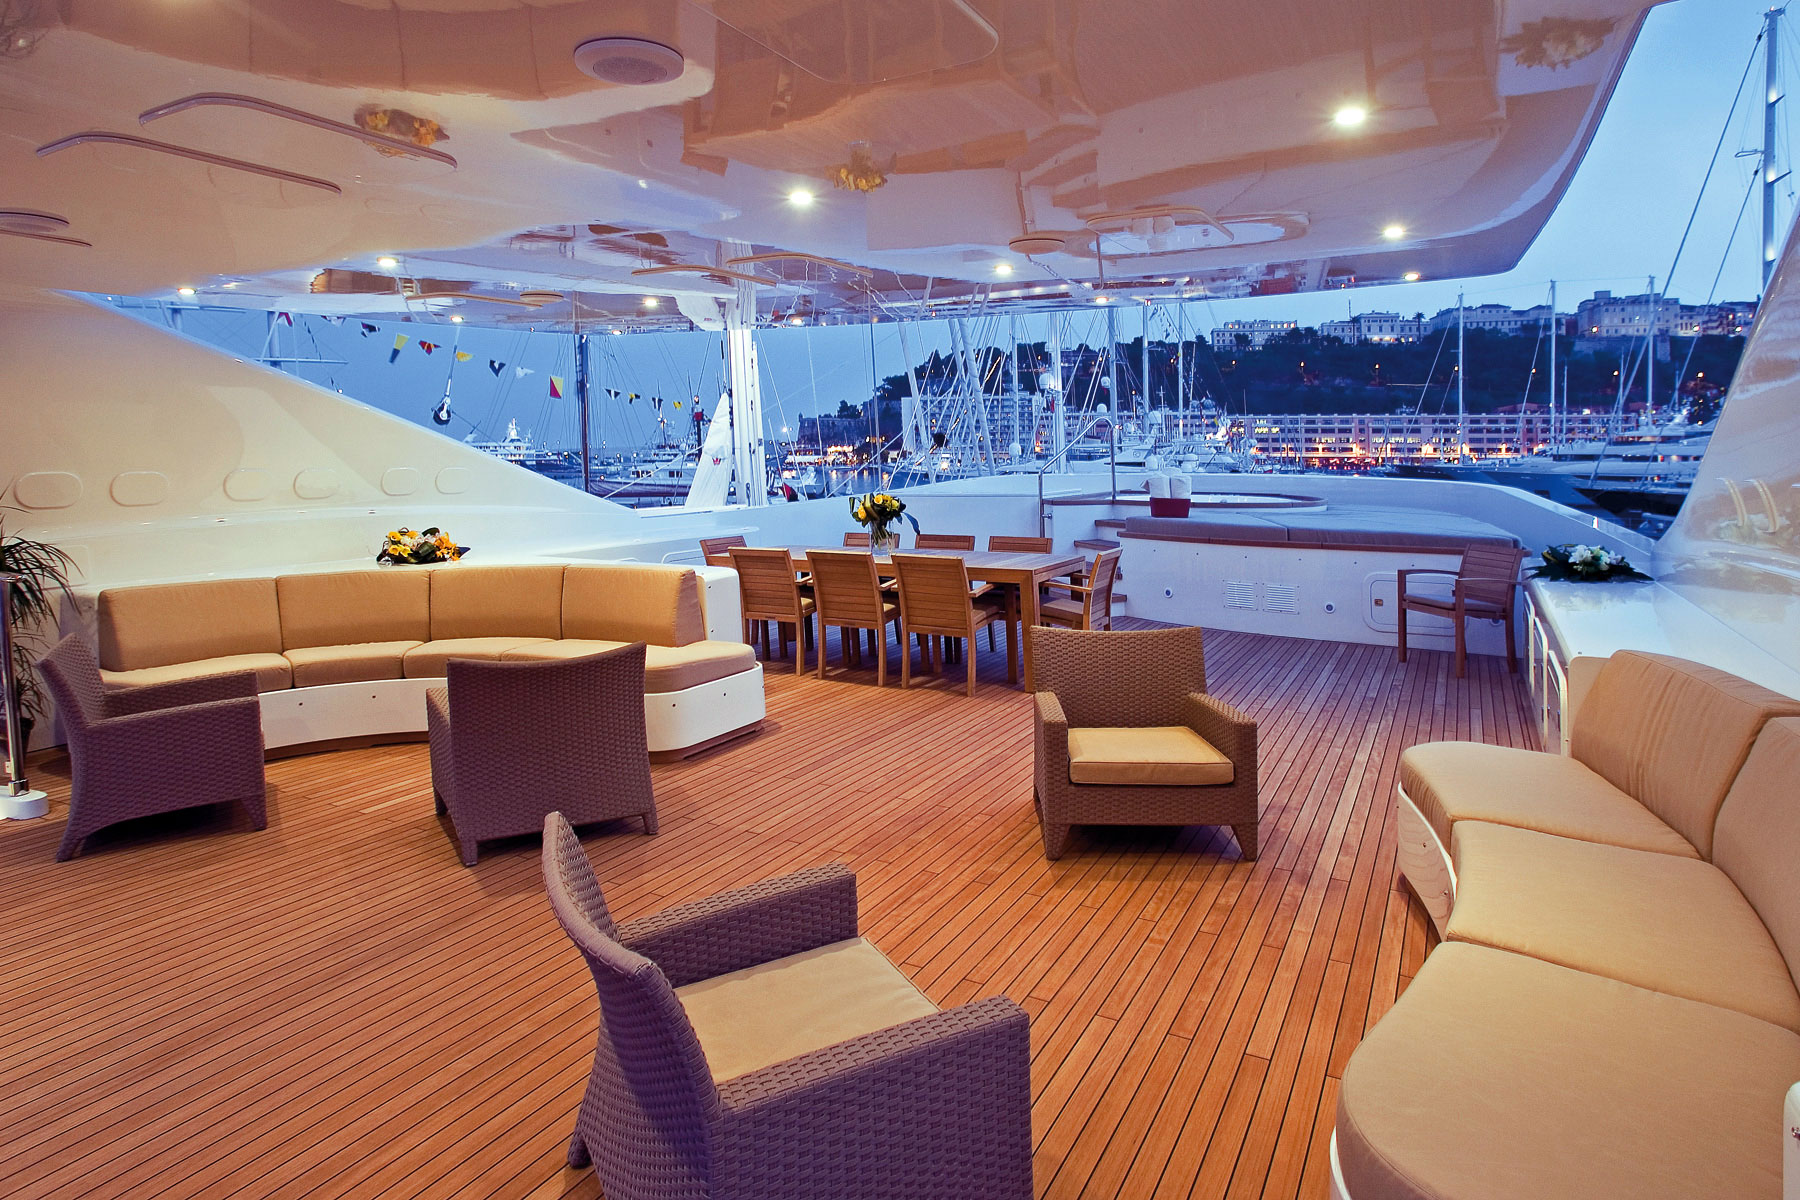 Luxury motor yacht Princess Iolanthe - Image courtesy of Mondo Marine